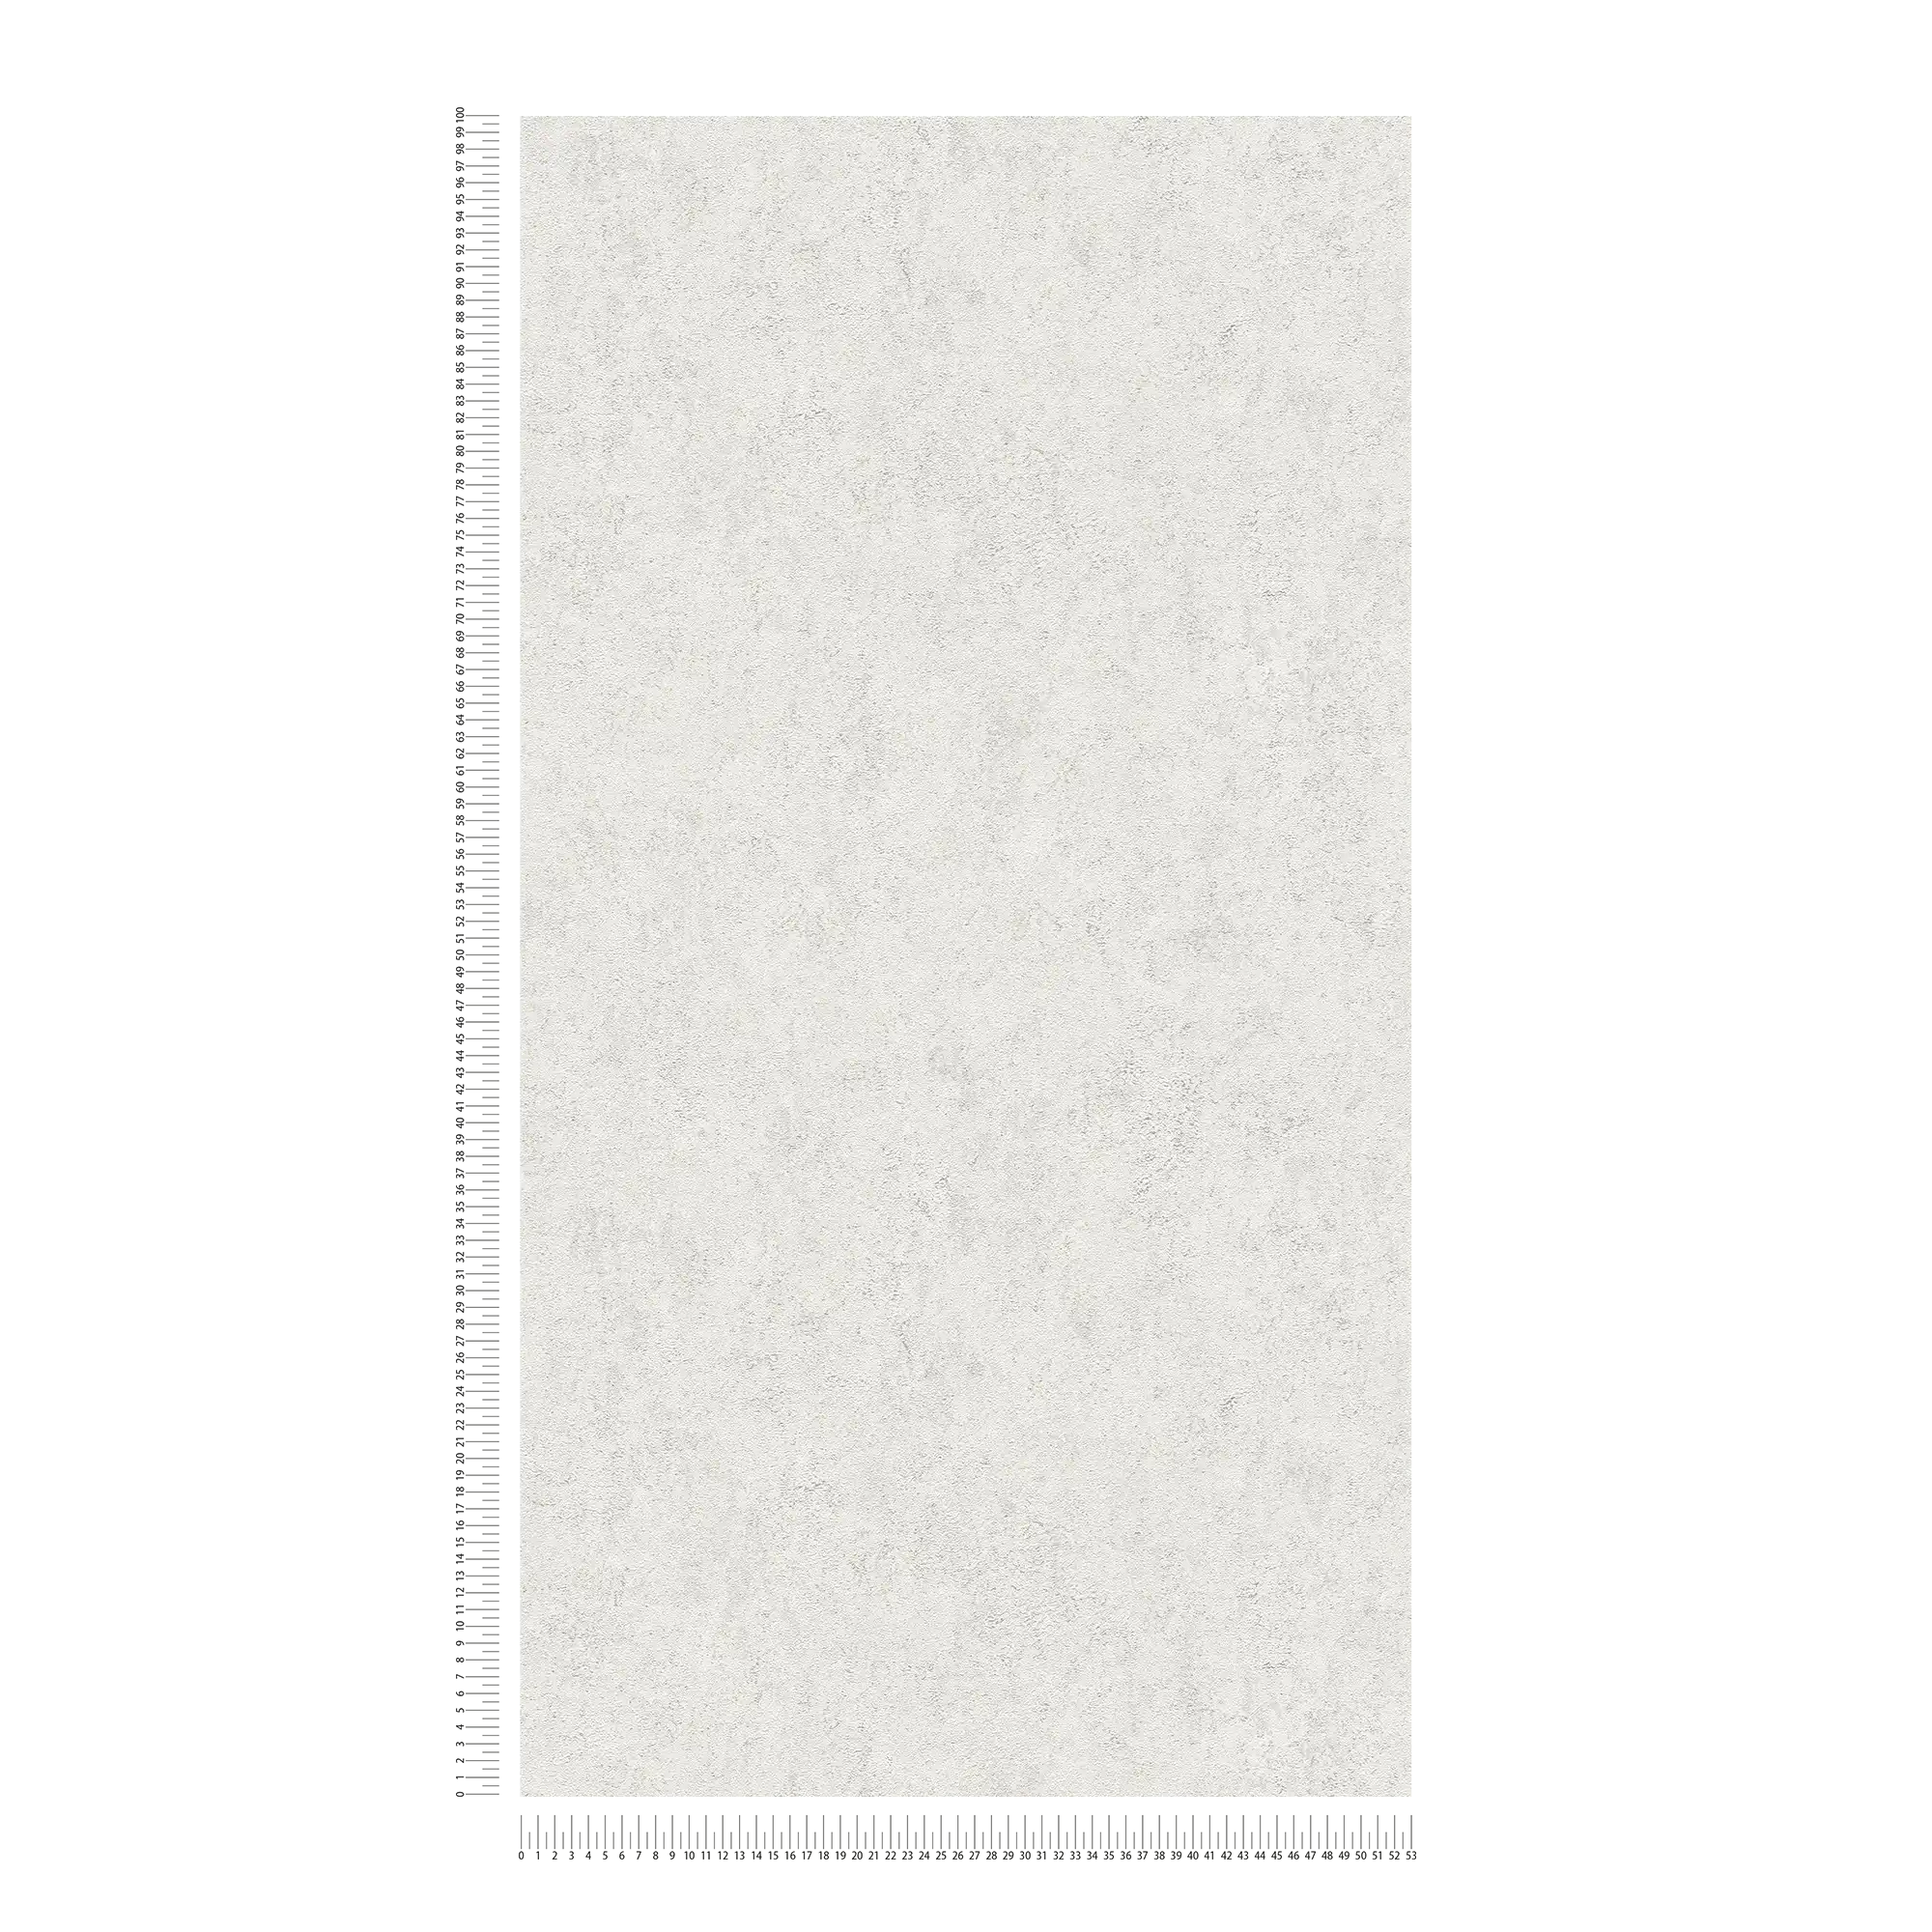             papel pintado texturado liso con efecto metalizado brillante - blanco
        